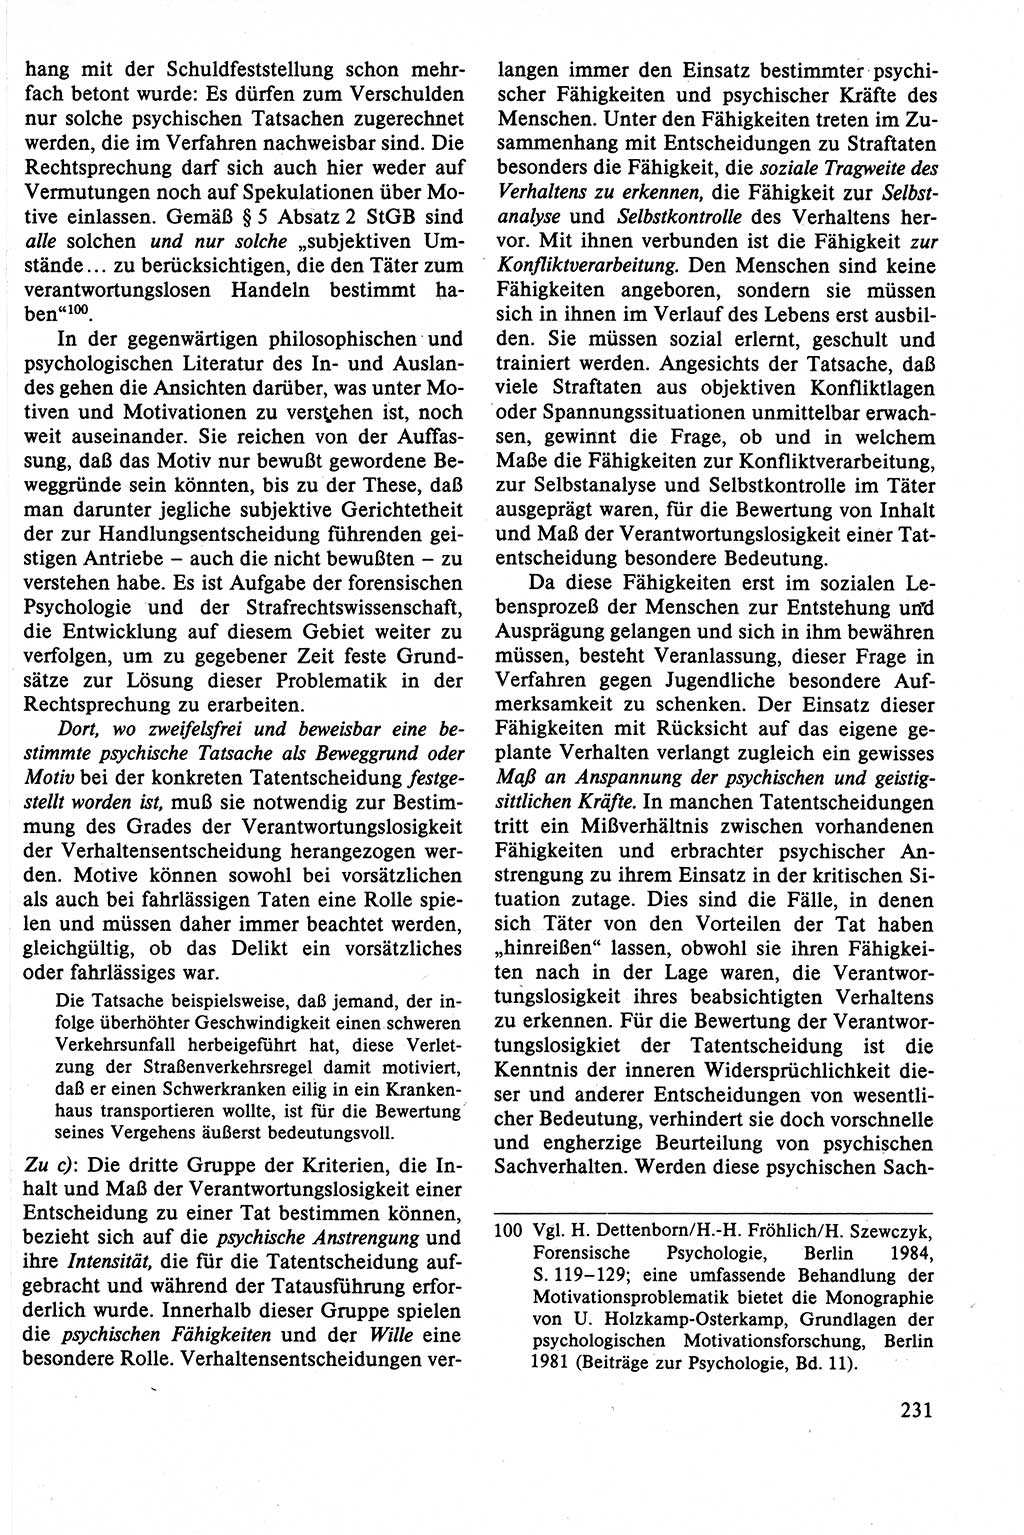 Strafrecht der DDR (Deutsche Demokratische Republik), Lehrbuch 1988, Seite 231 (Strafr. DDR Lb. 1988, S. 231)